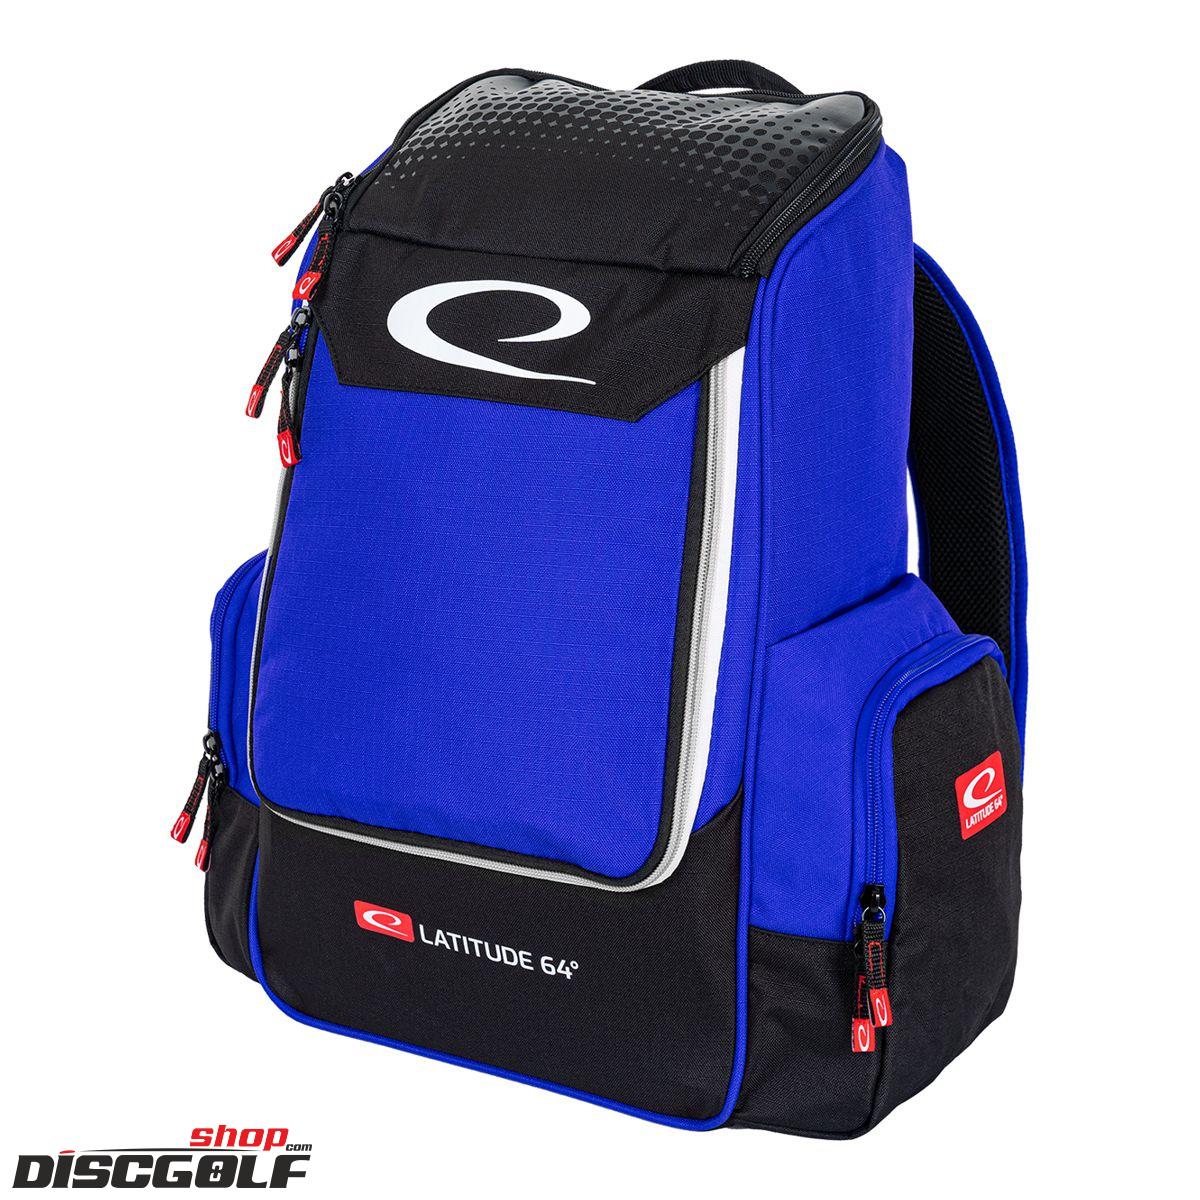 Latitude 64º Core Bag  - Modrá V.2 (discgolf)